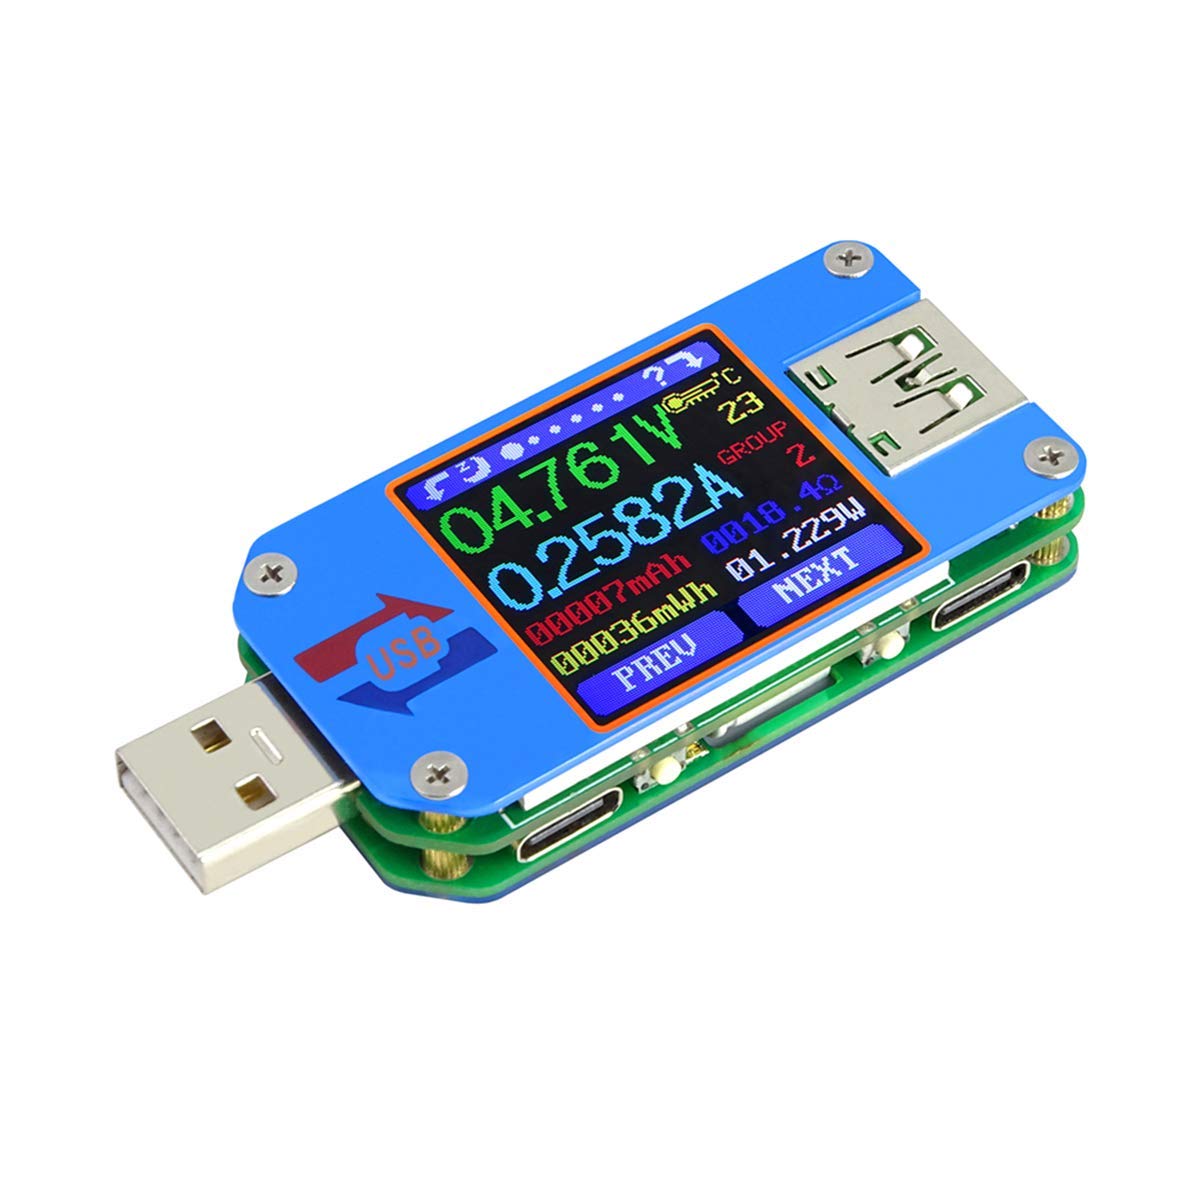 Pickering Oproepen Machtig MakerHawk UM25C USB Tester, Bluetooth USB Meter, Type-C Current Meter,